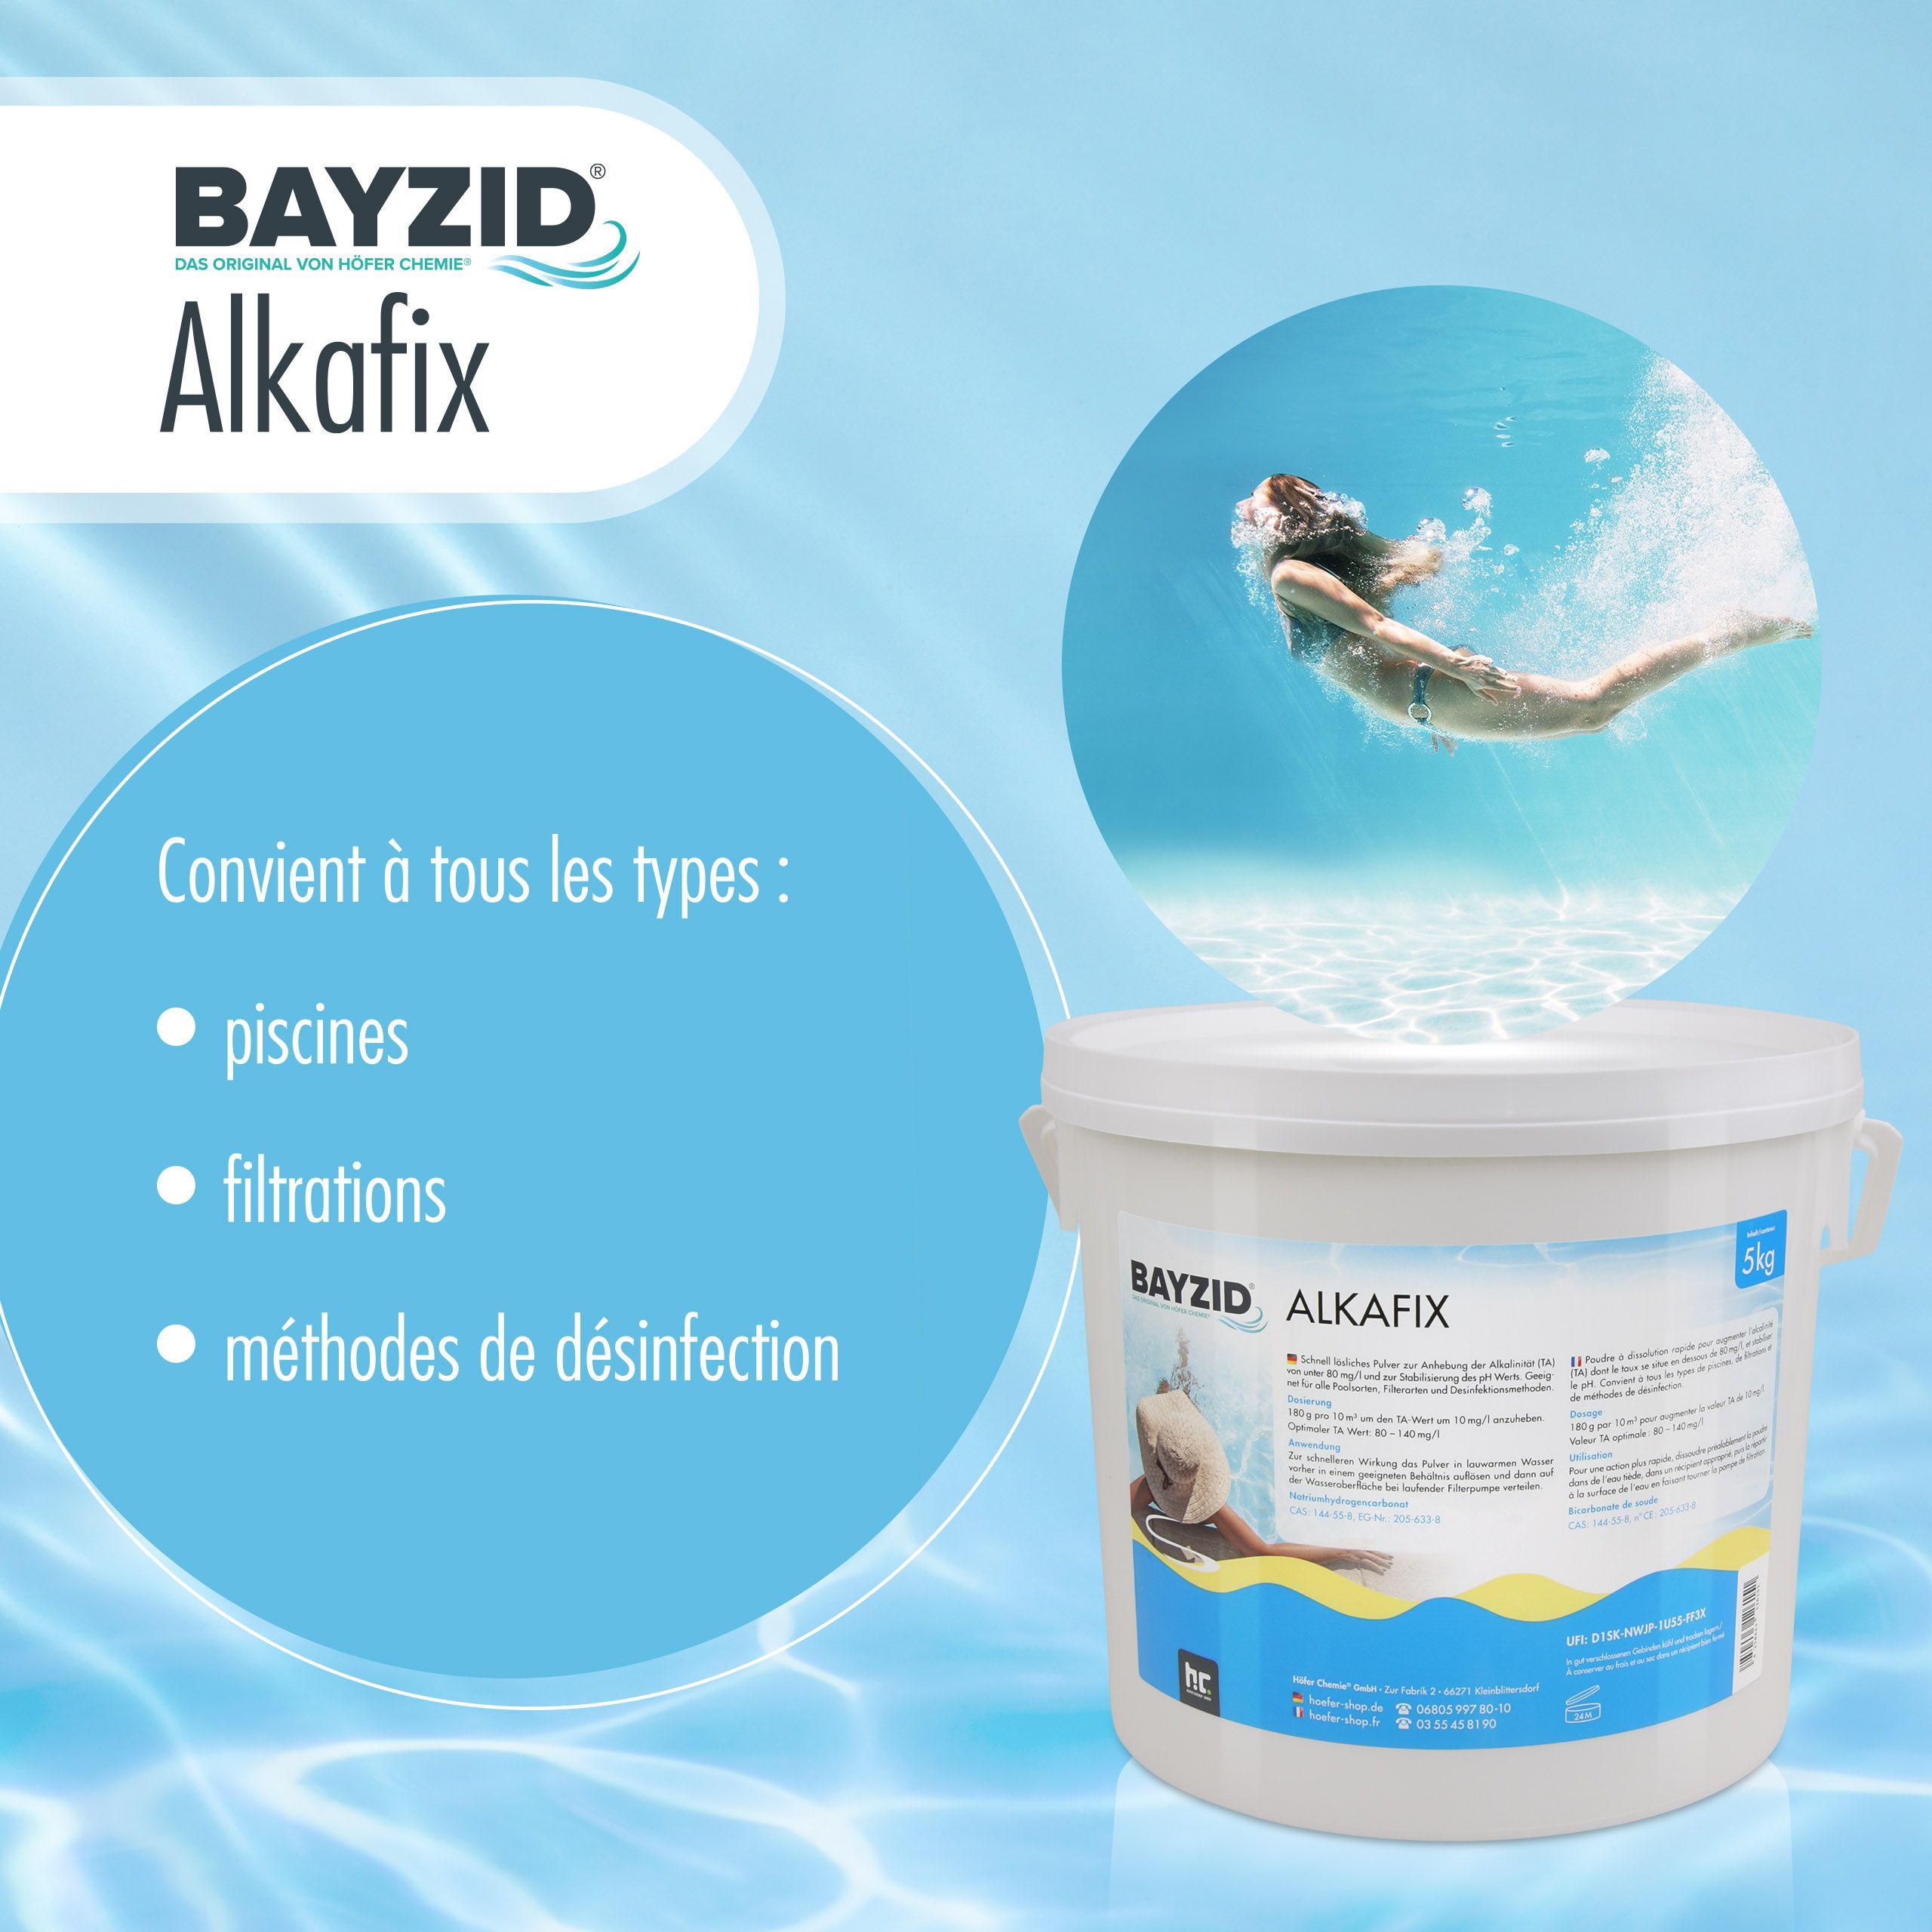 1 kg BAYZID®  Alkafix zur Anhebung der Alkalinität (TA)